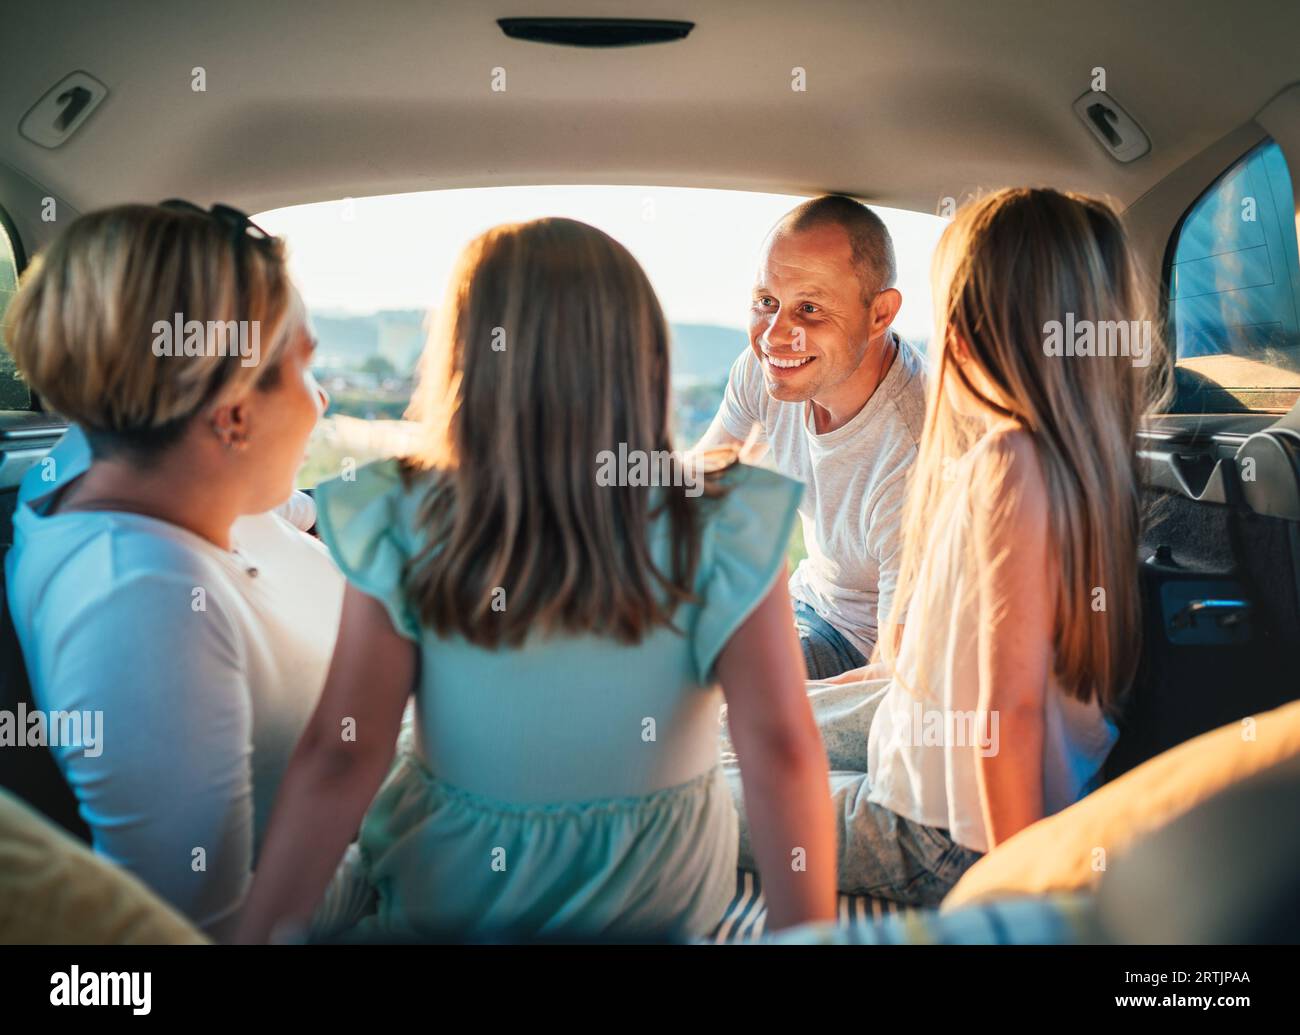 Heureux jeune couple avec deux filles à l'intérieur du coffre de la voiture pendant auto trop. Ils sourient, rient et bavardent. Portrait de père souriant heureux Banque D'Images